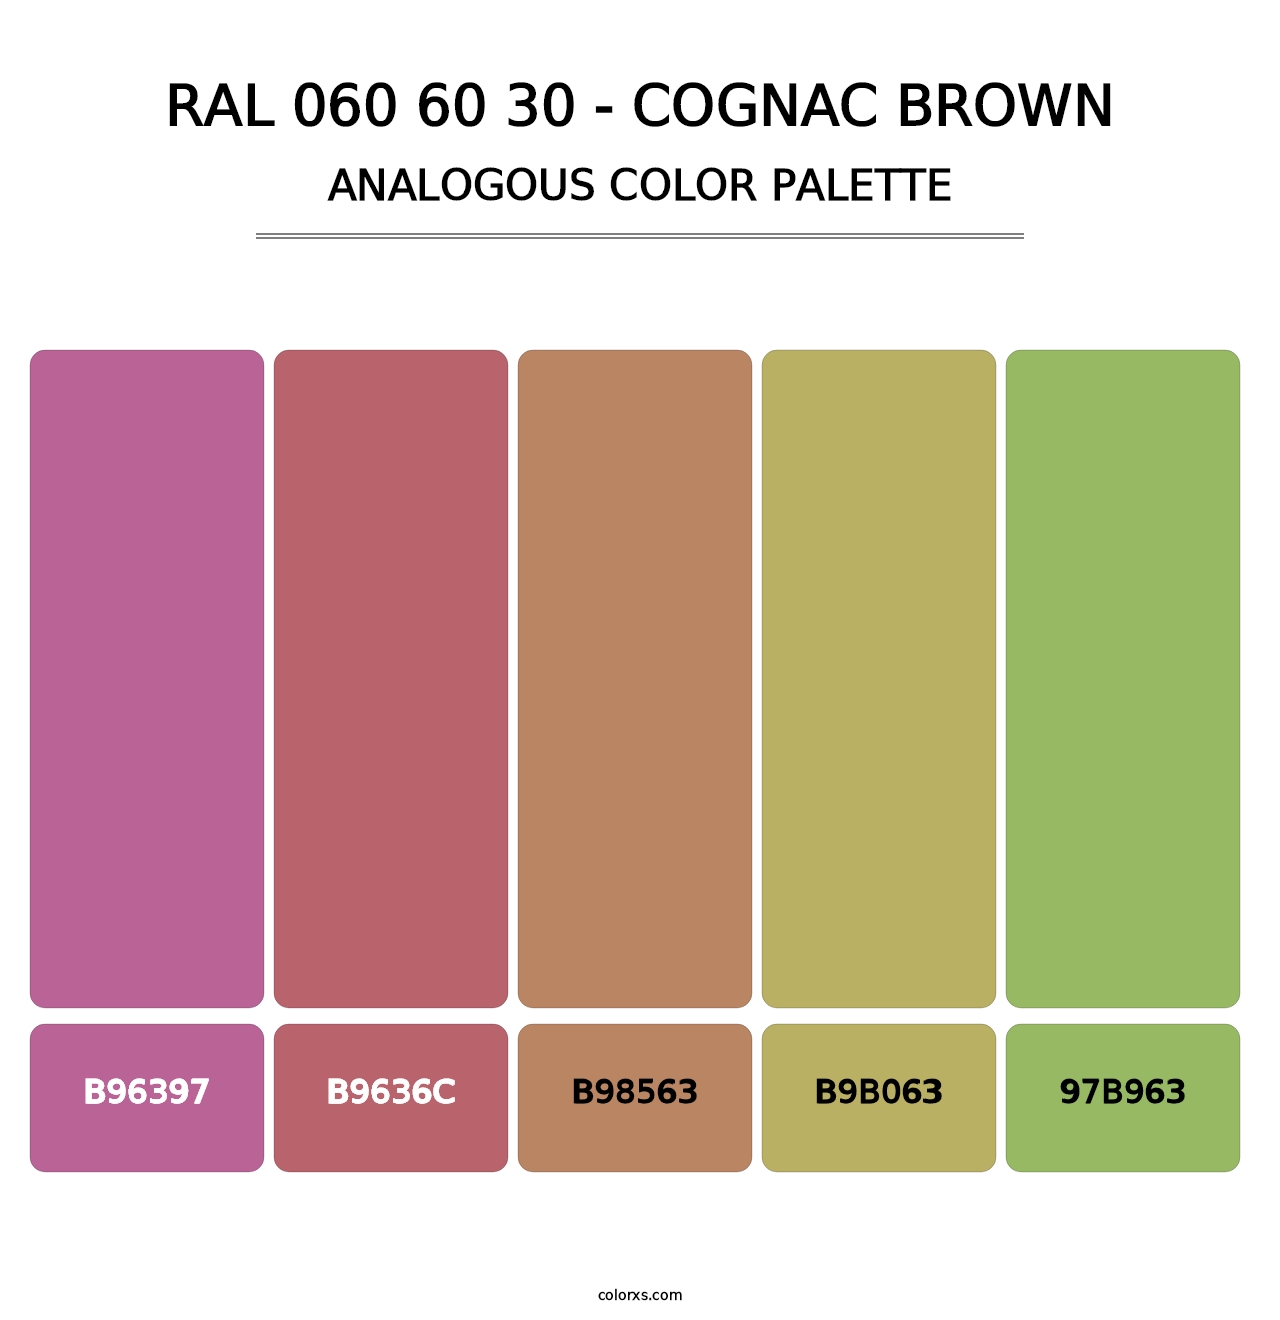 RAL 060 60 30 - Cognac Brown - Analogous Color Palette